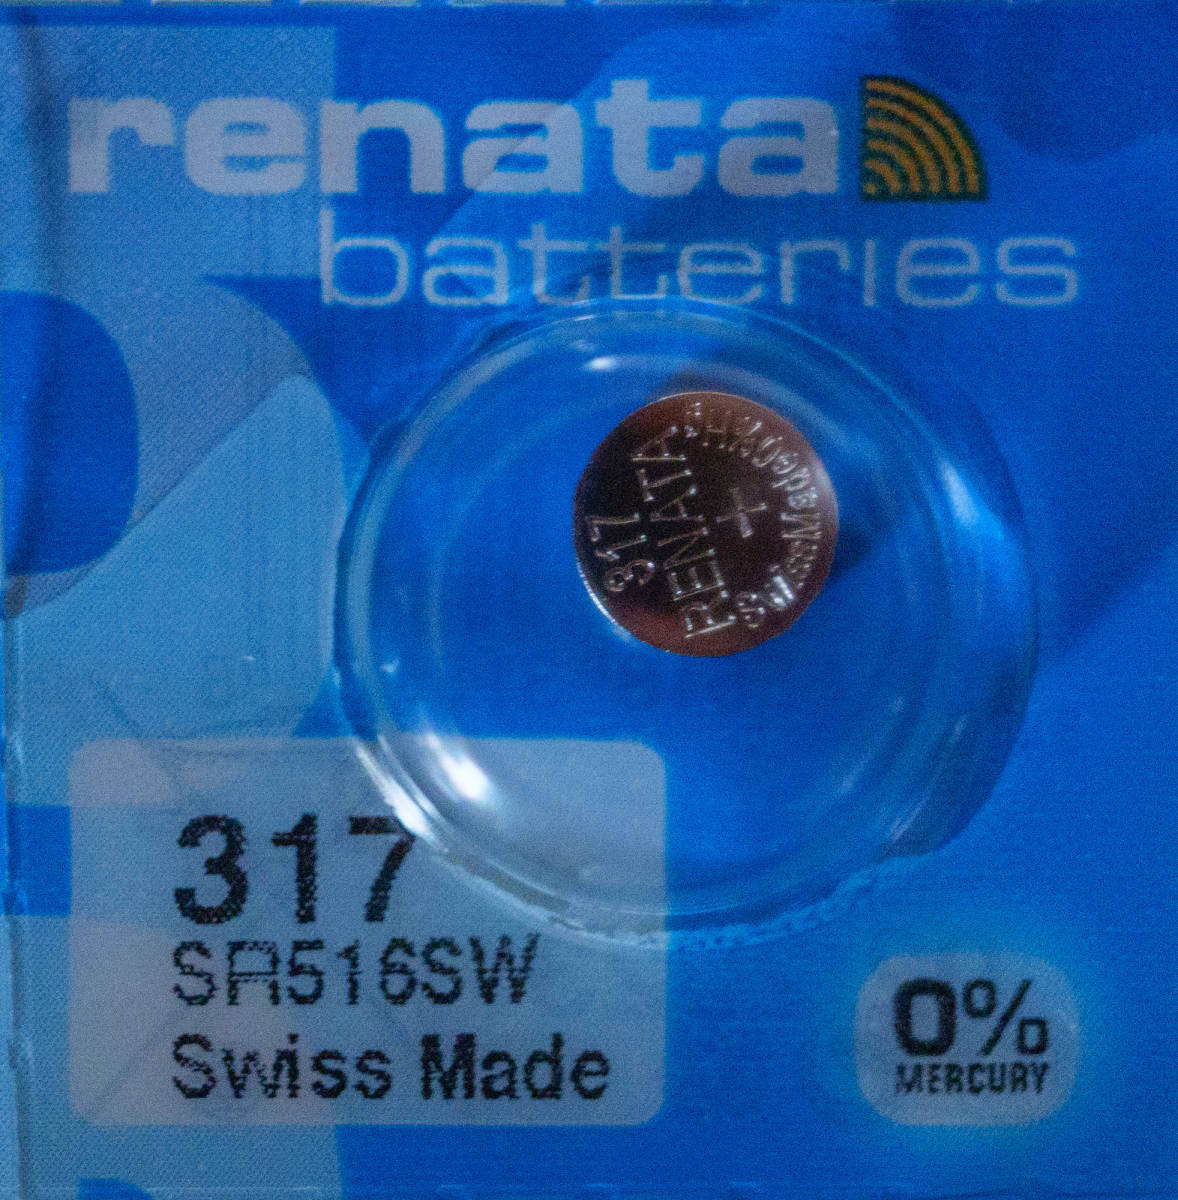 ●【即決送料無料】1個243円 スイス製RENATA 317(SR516SW) 酸化銀電池 使用推奨期限：2026年10月●の画像1